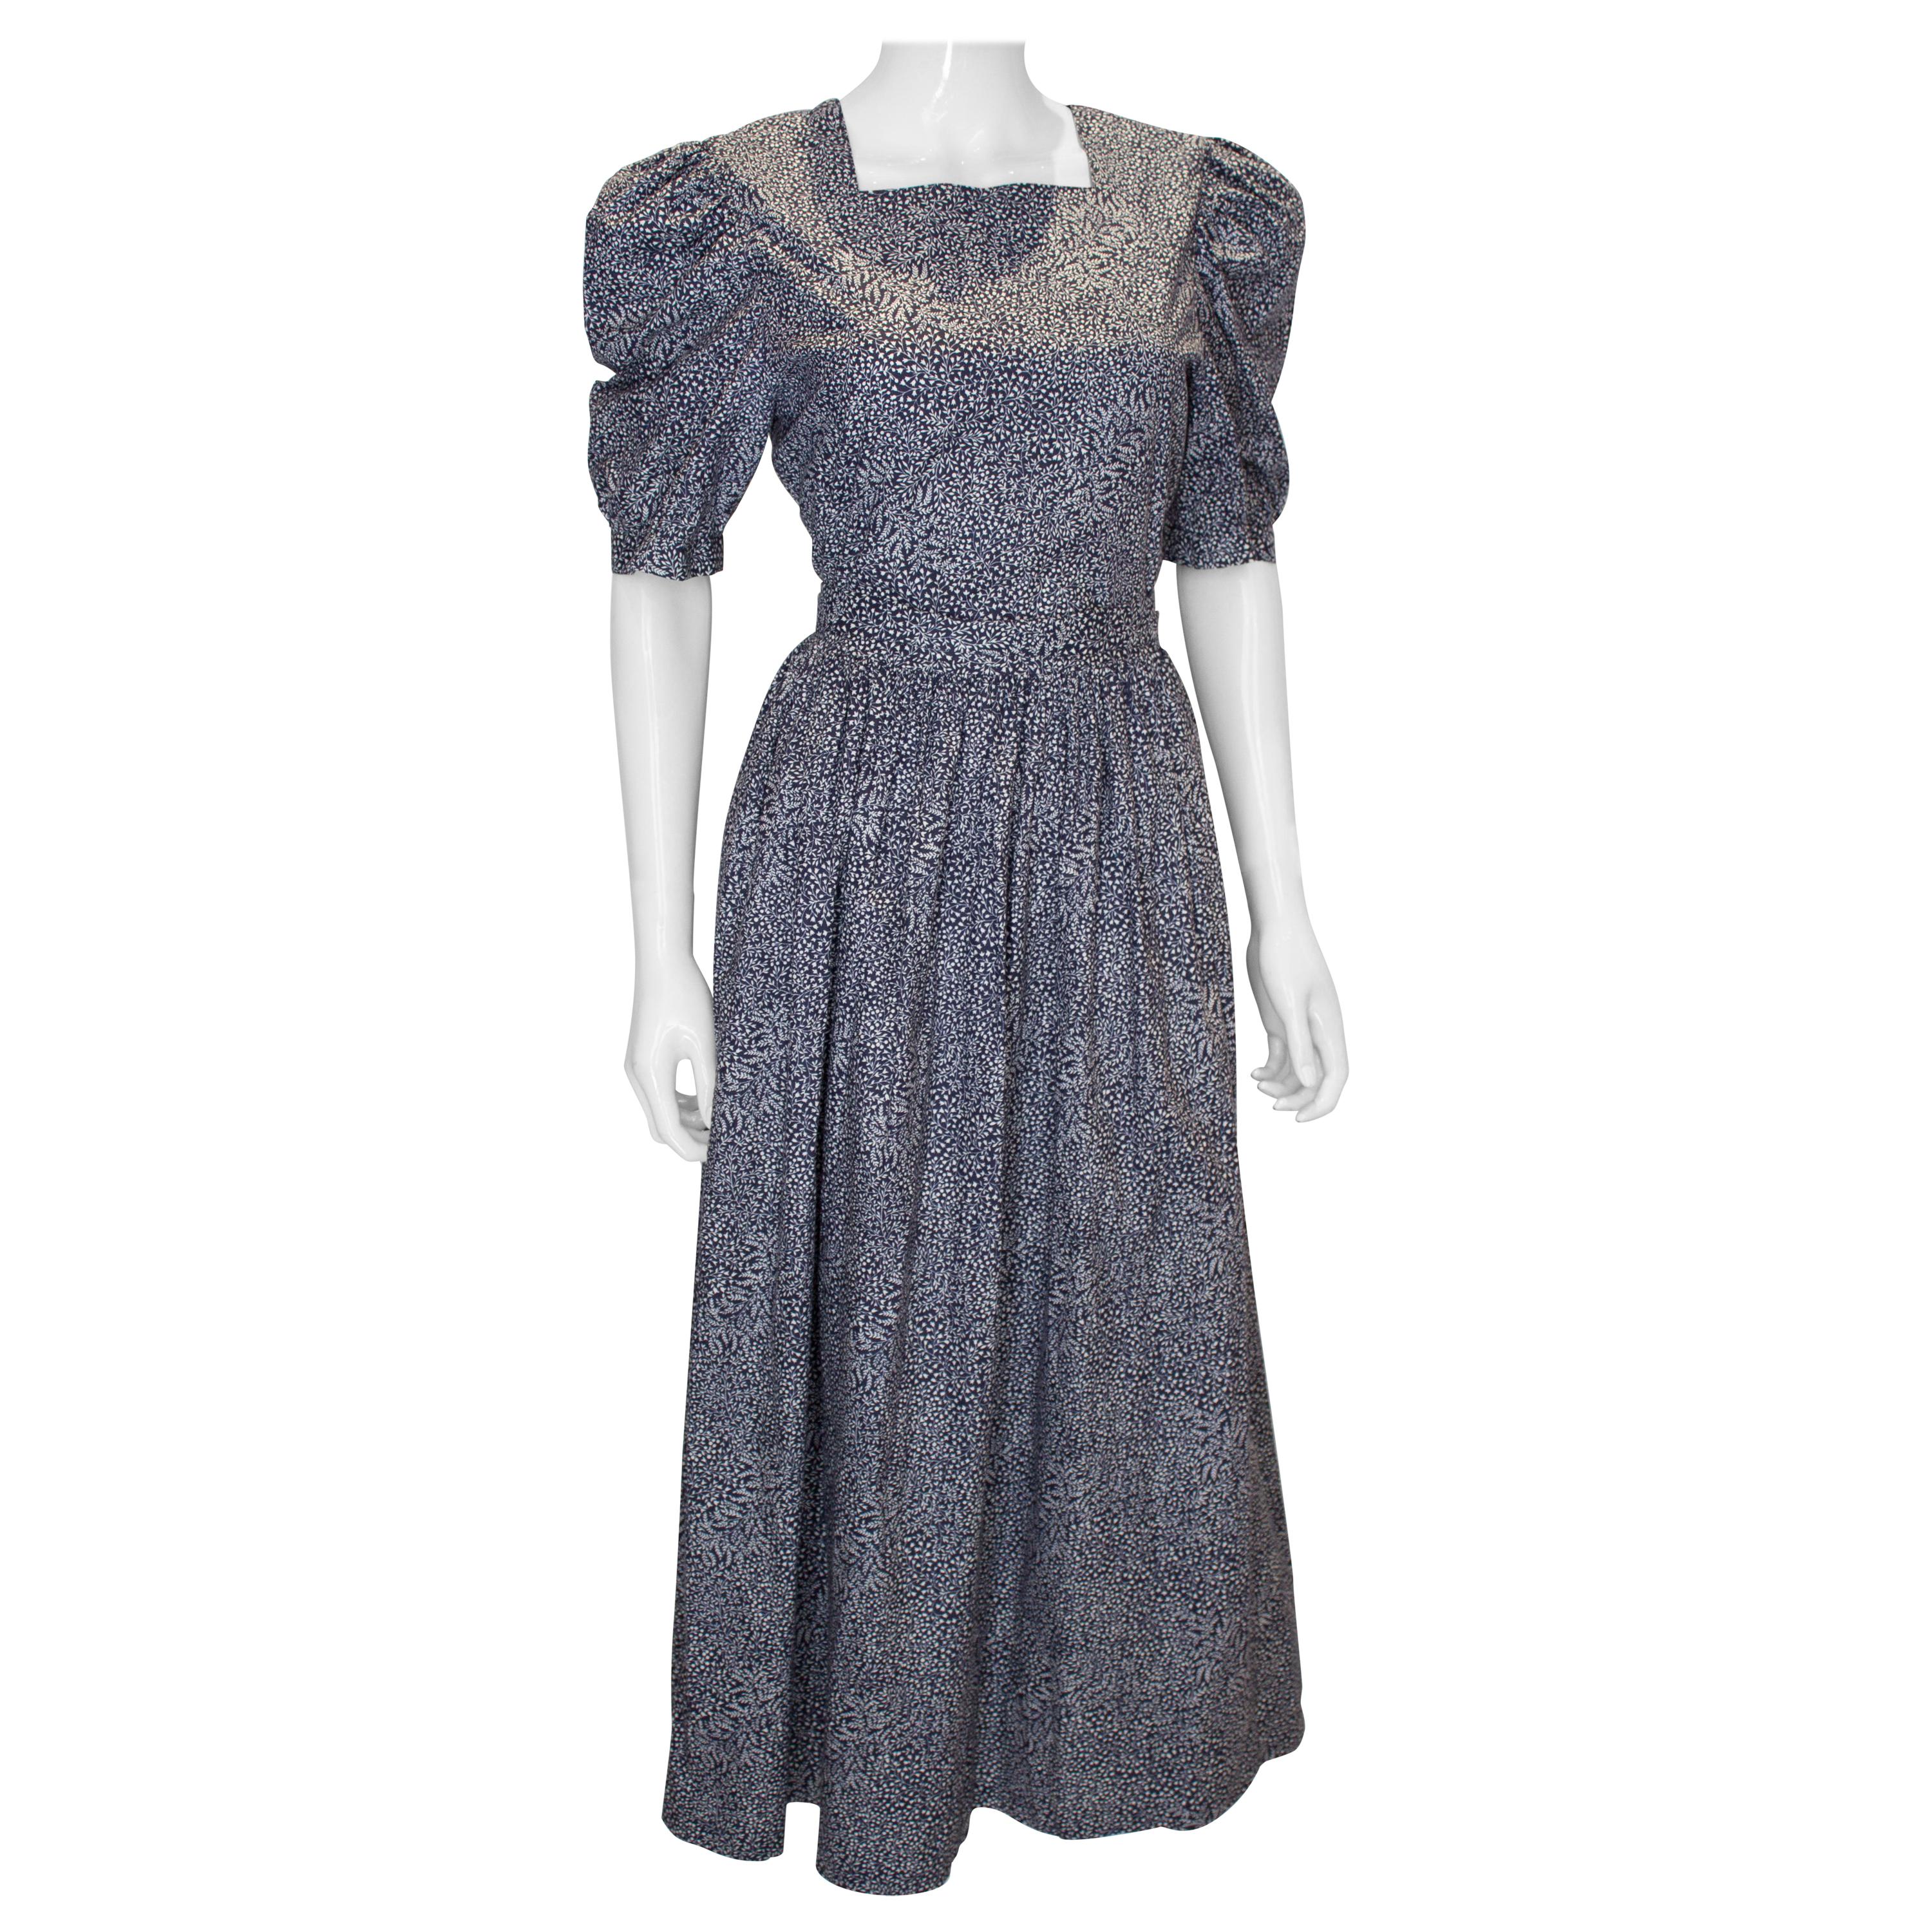 Vintage Laura Ashley Cotton Dress